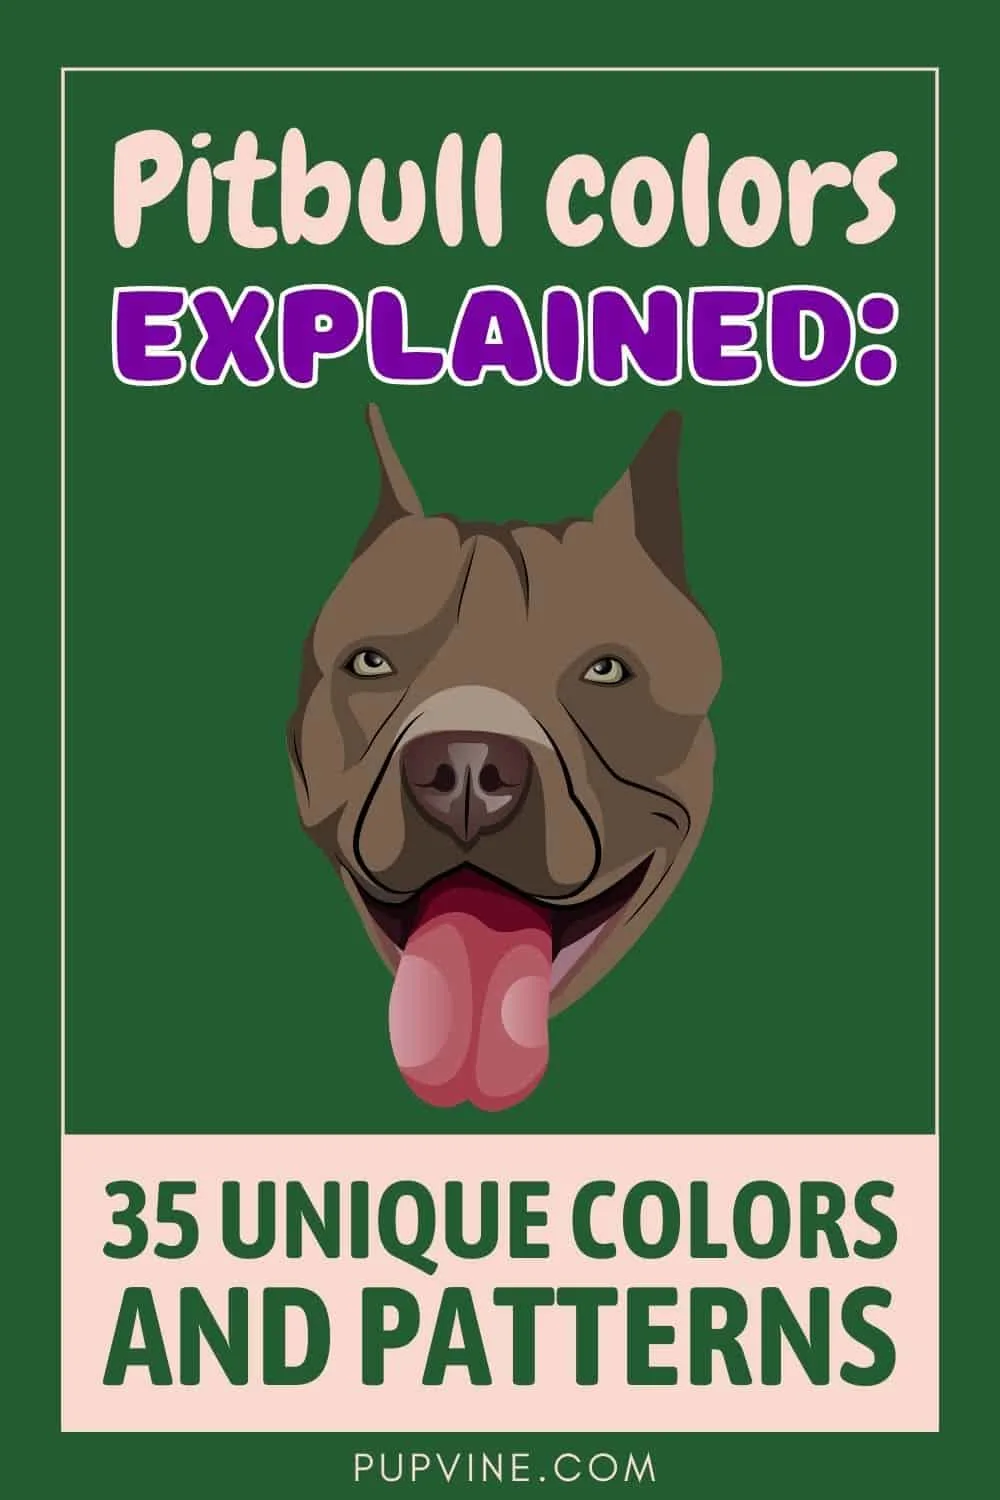 Pitbull Colors Explained: 35 Unique Colors And Patterns